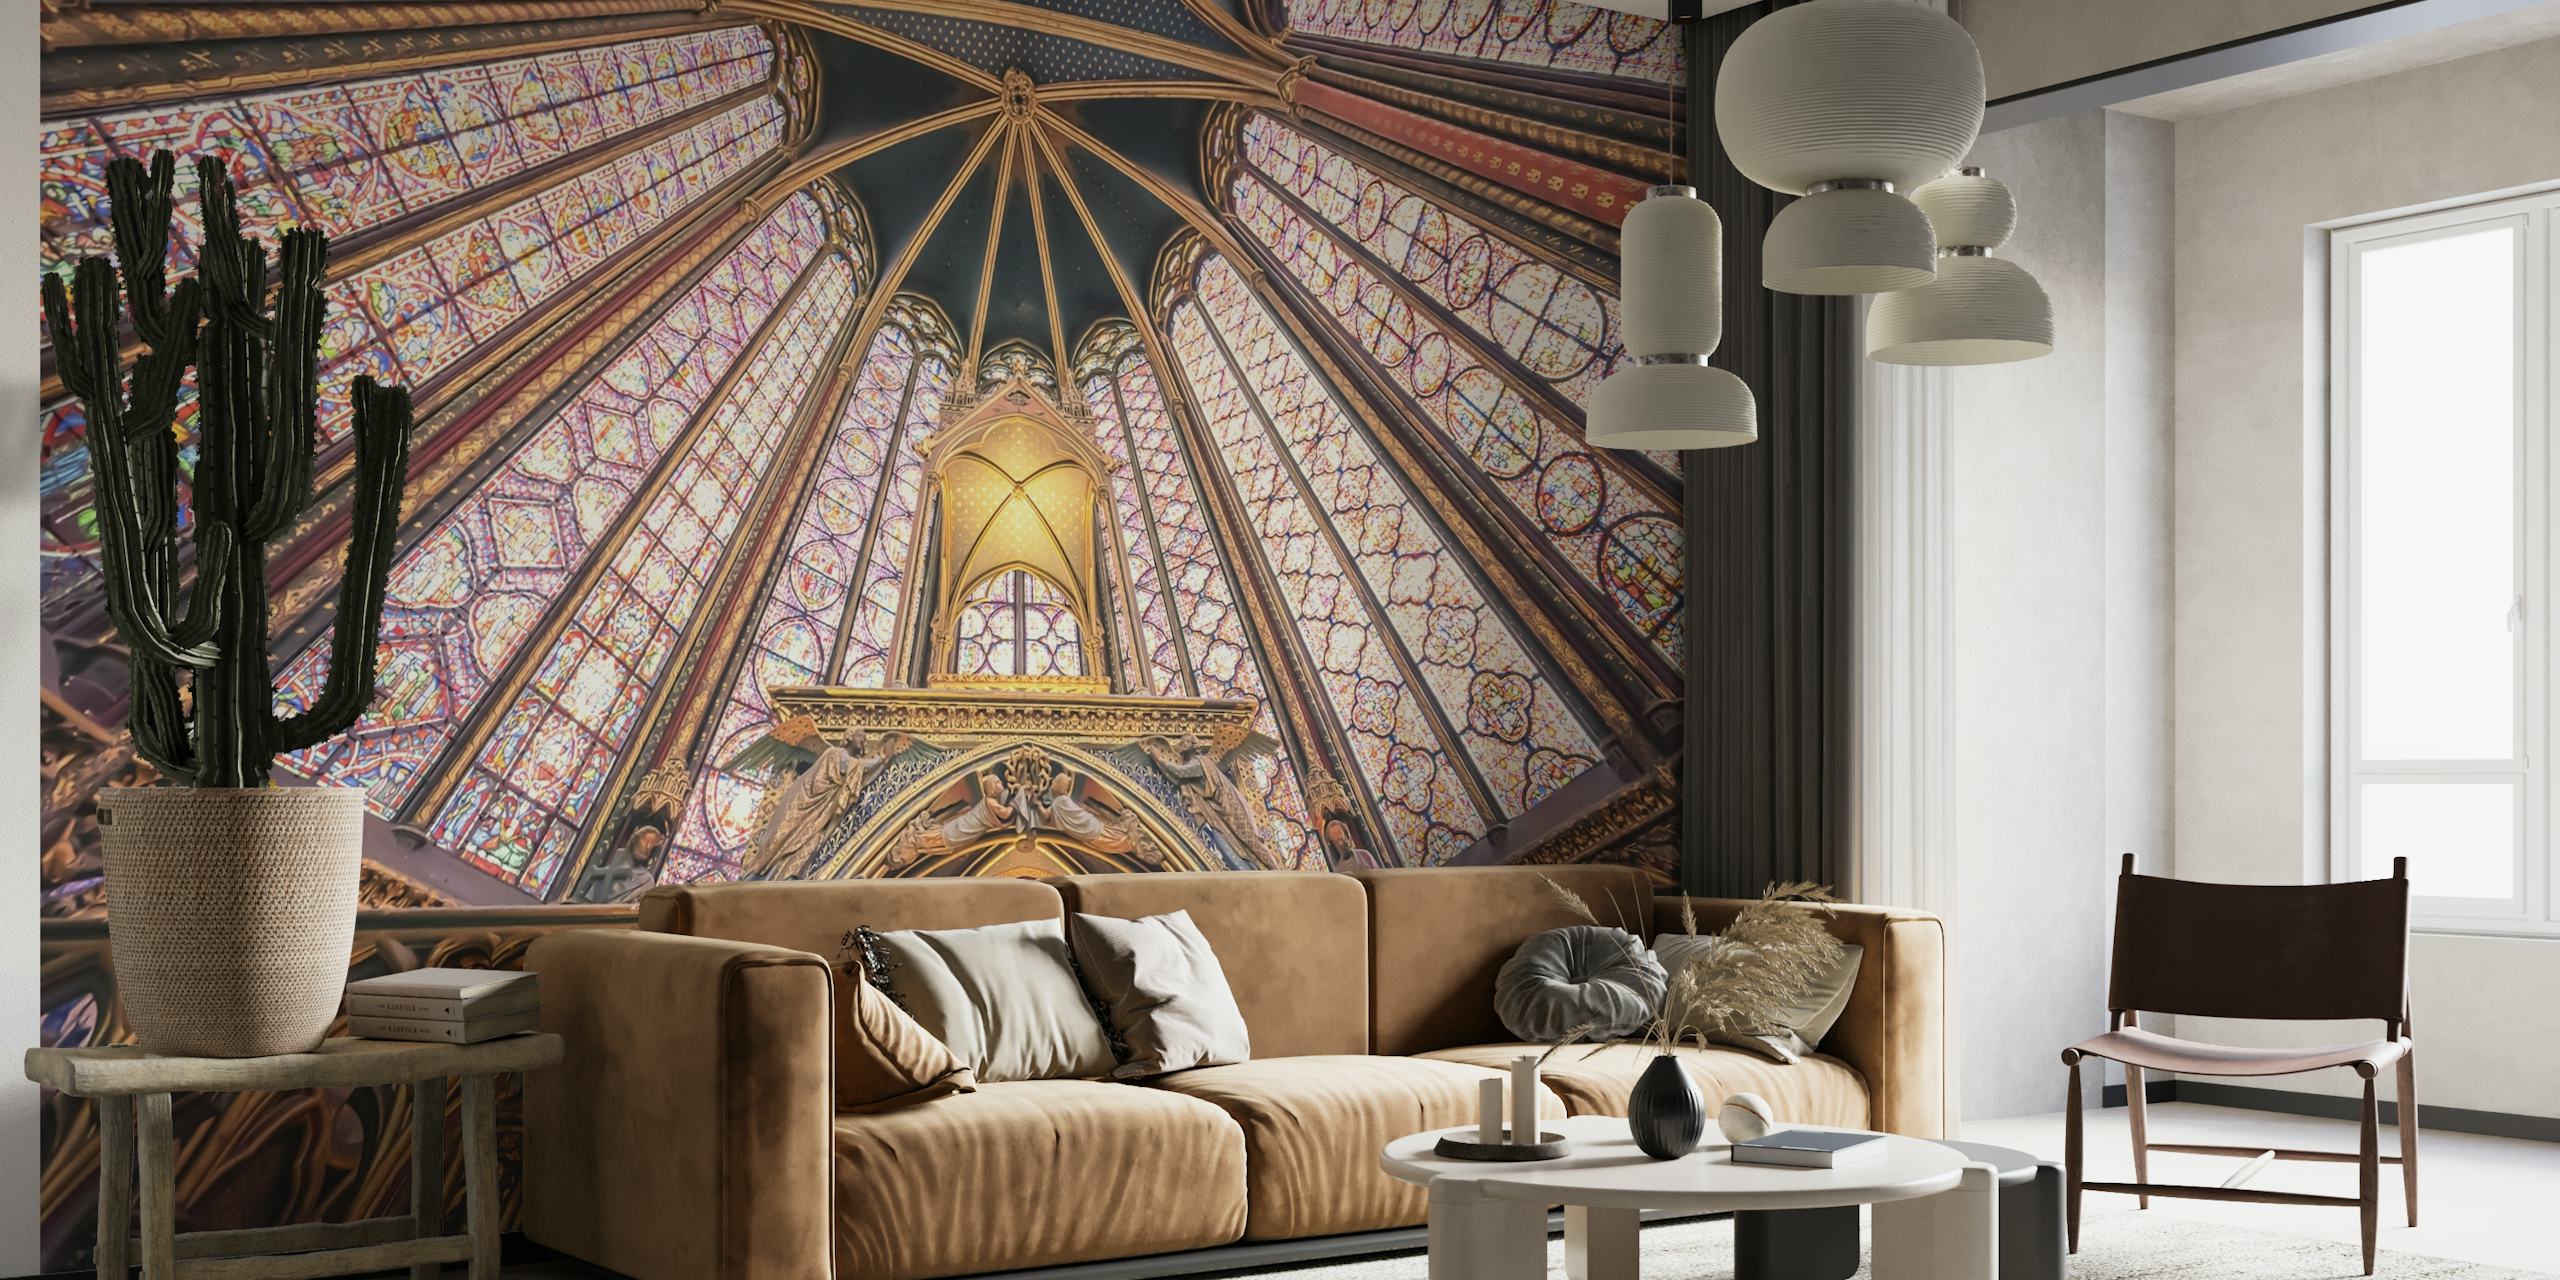 Fototapeta z architekturą gotycką Sainte-Chapelle przedstawiająca żywe wzory i barwy kultowego sufitu.